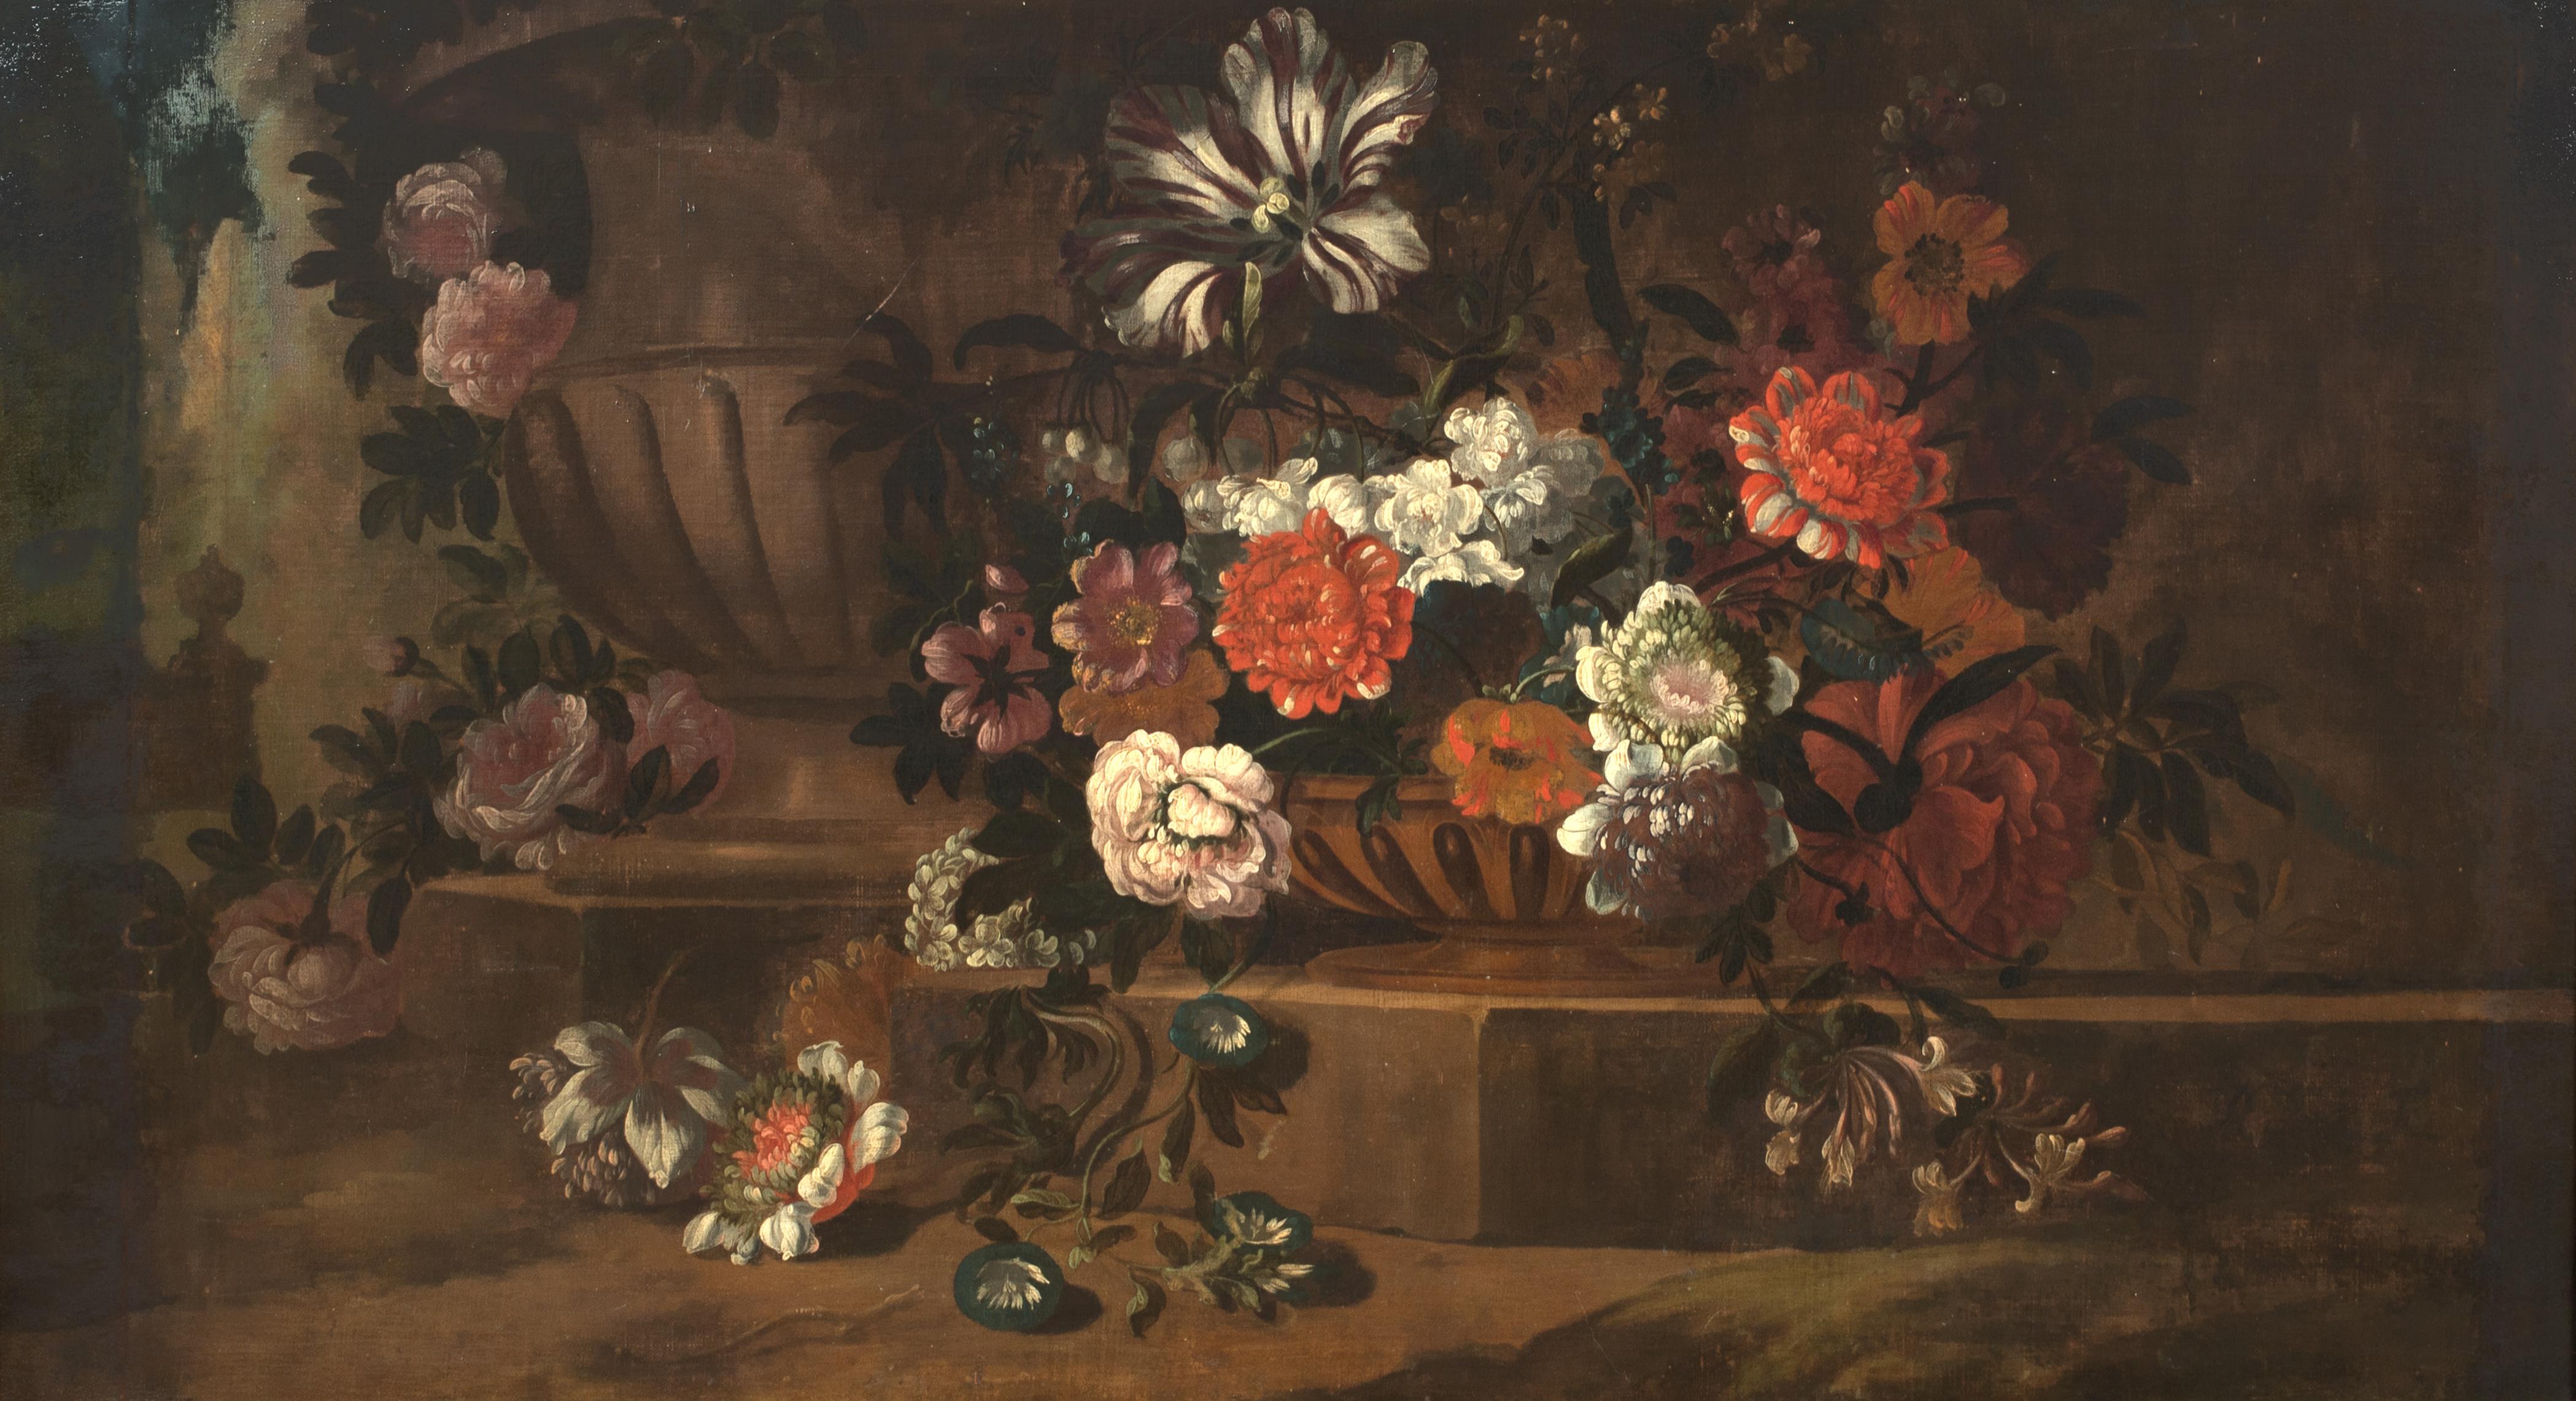 Stillleben mit Blumen in einer klassischen Urne, 18. Jahrhundert  – Painting von Unknown